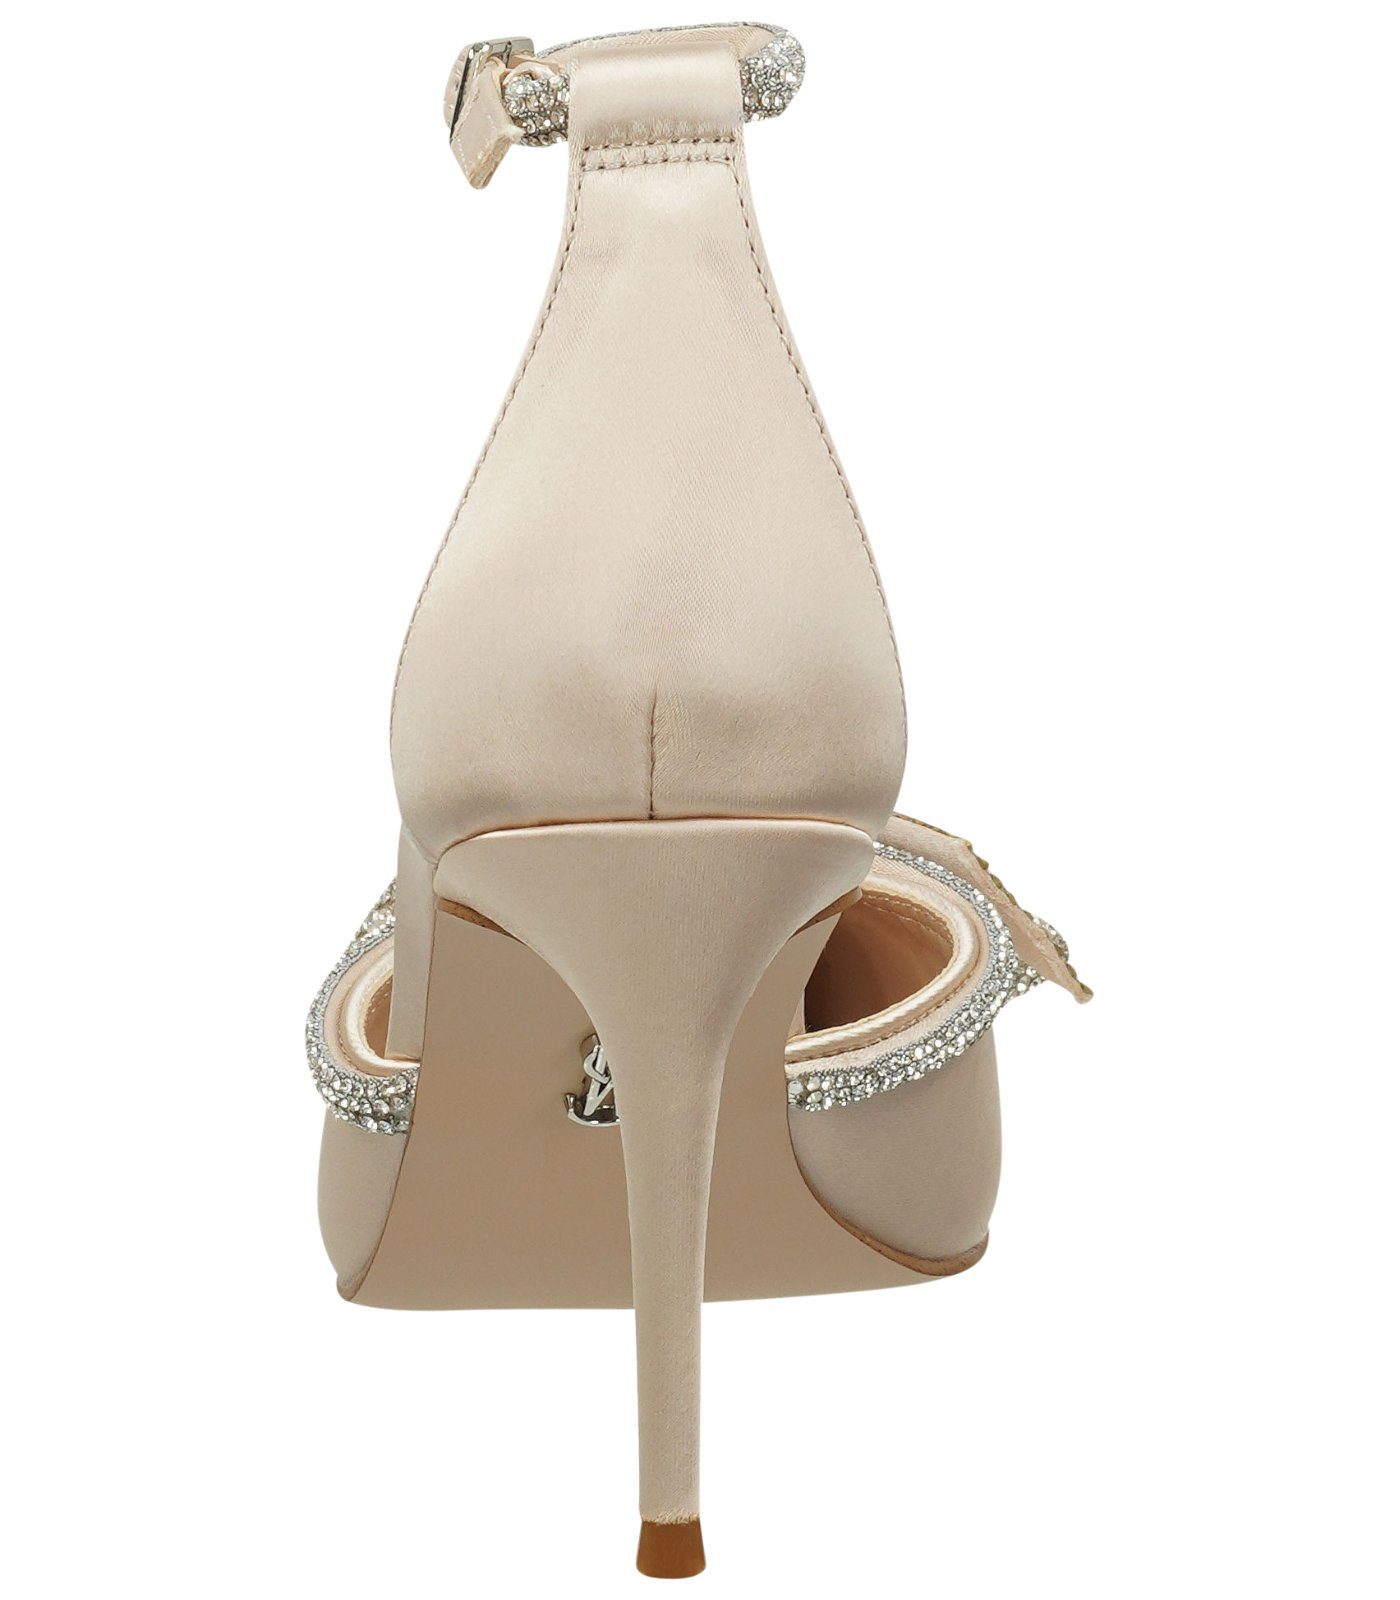 Textil Champagner High-Heel-Sandalette STEVE MADDEN Sandalen